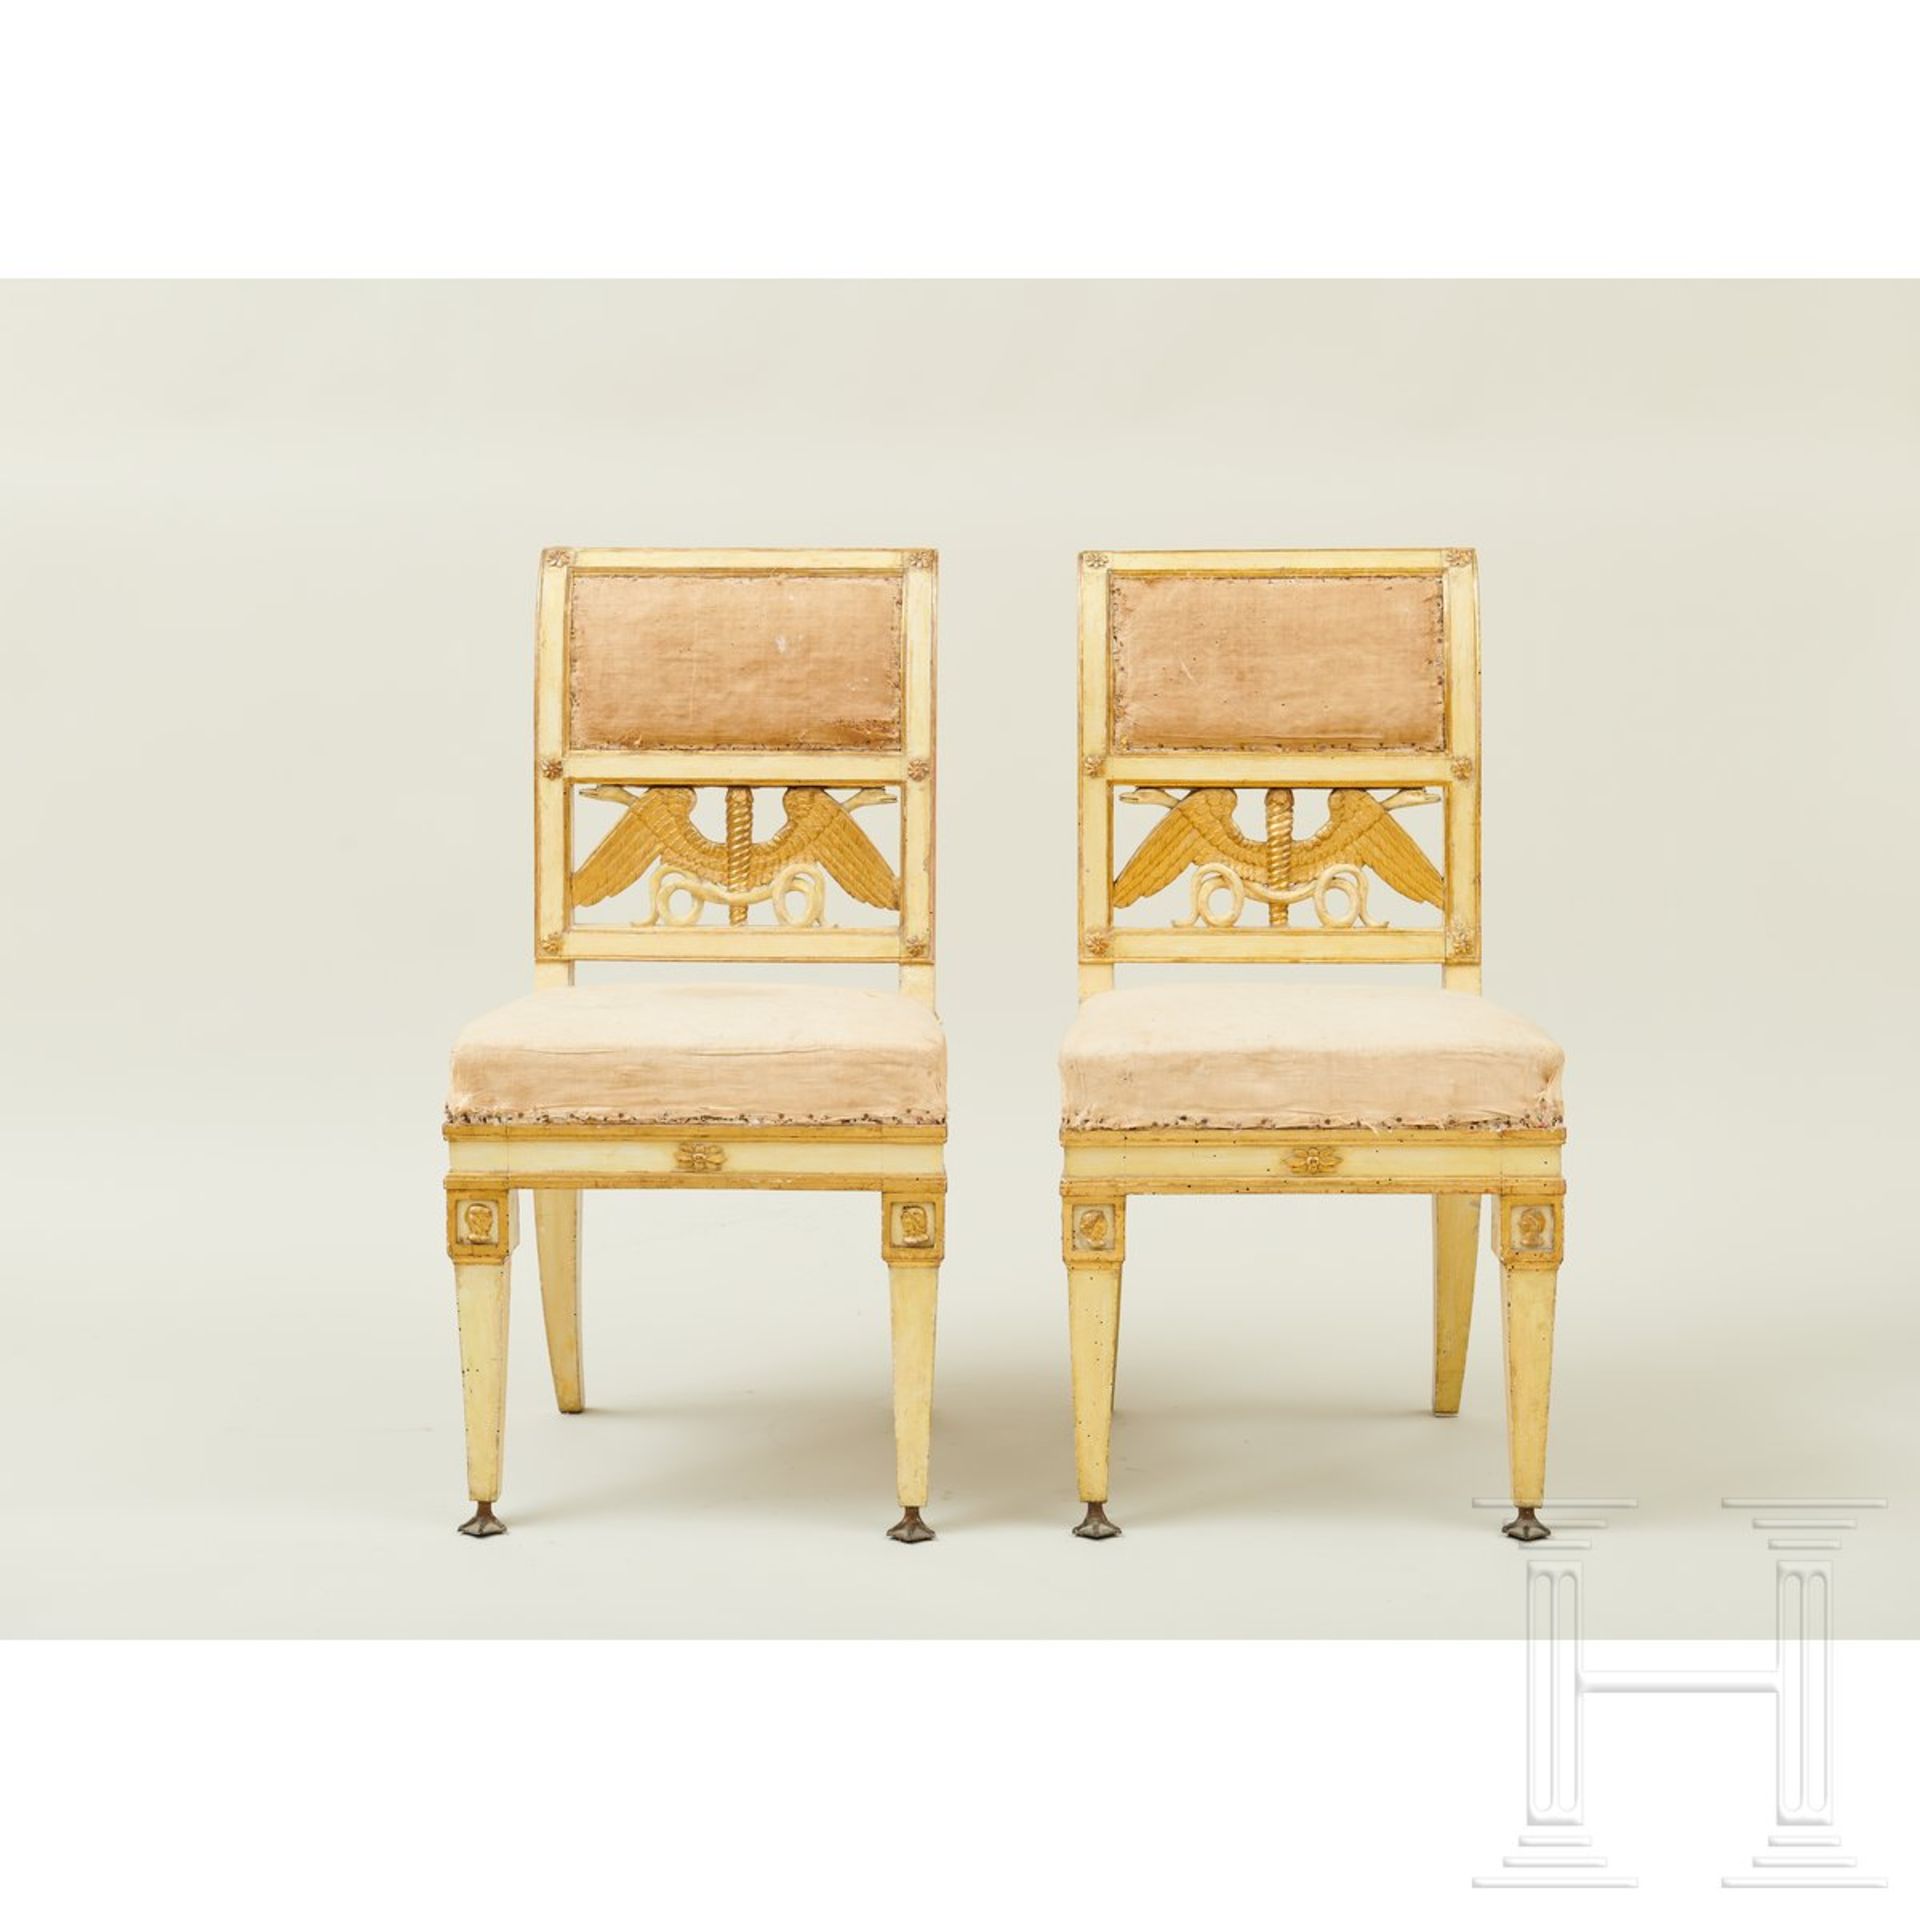 Ein Paar klassizistische Stühle, Lucca, um 1800 - Image 2 of 16